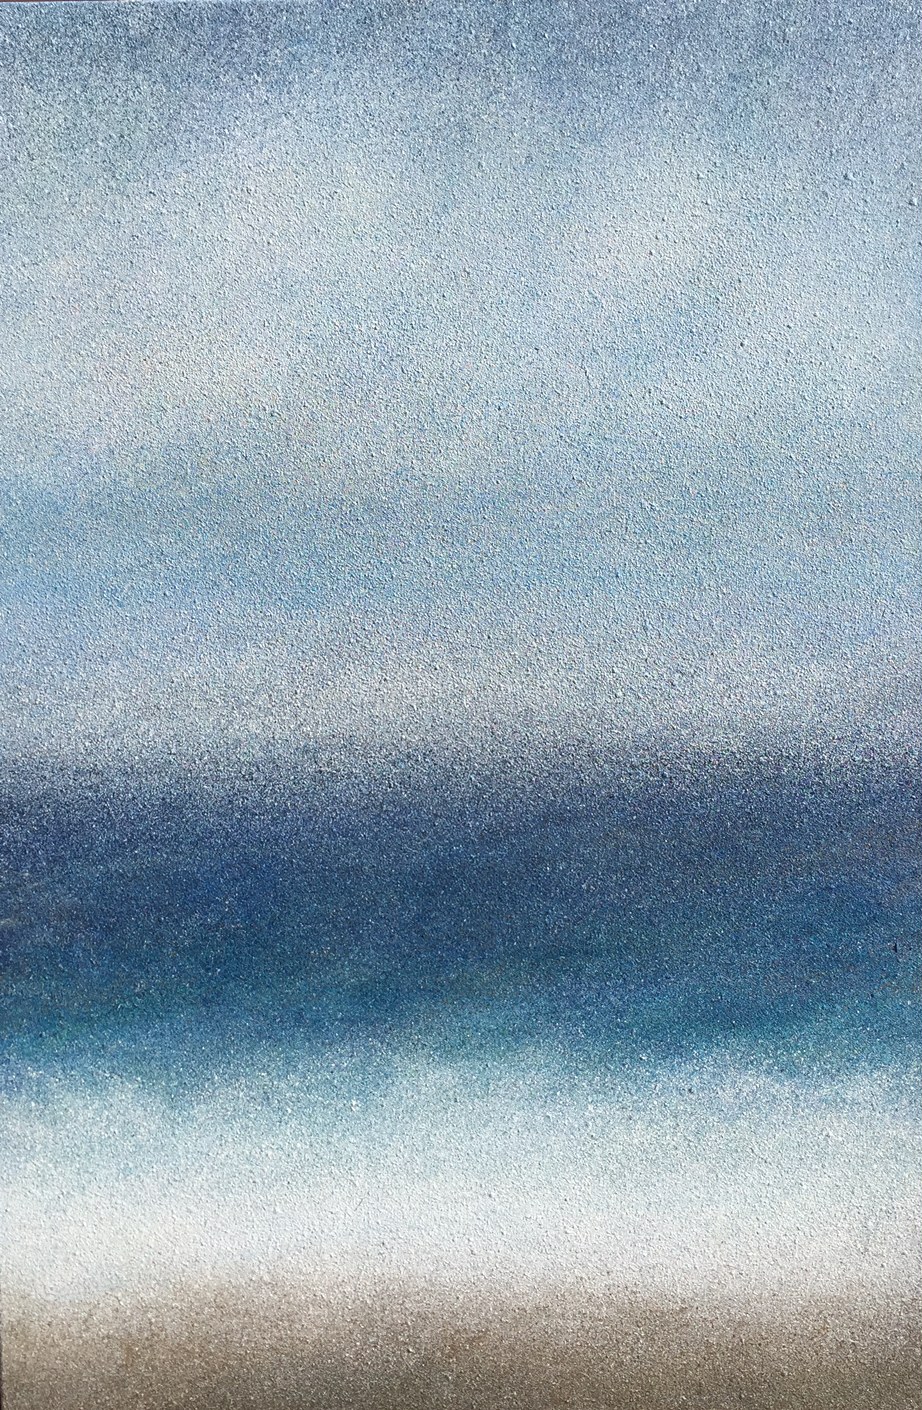 Sea and Fog 